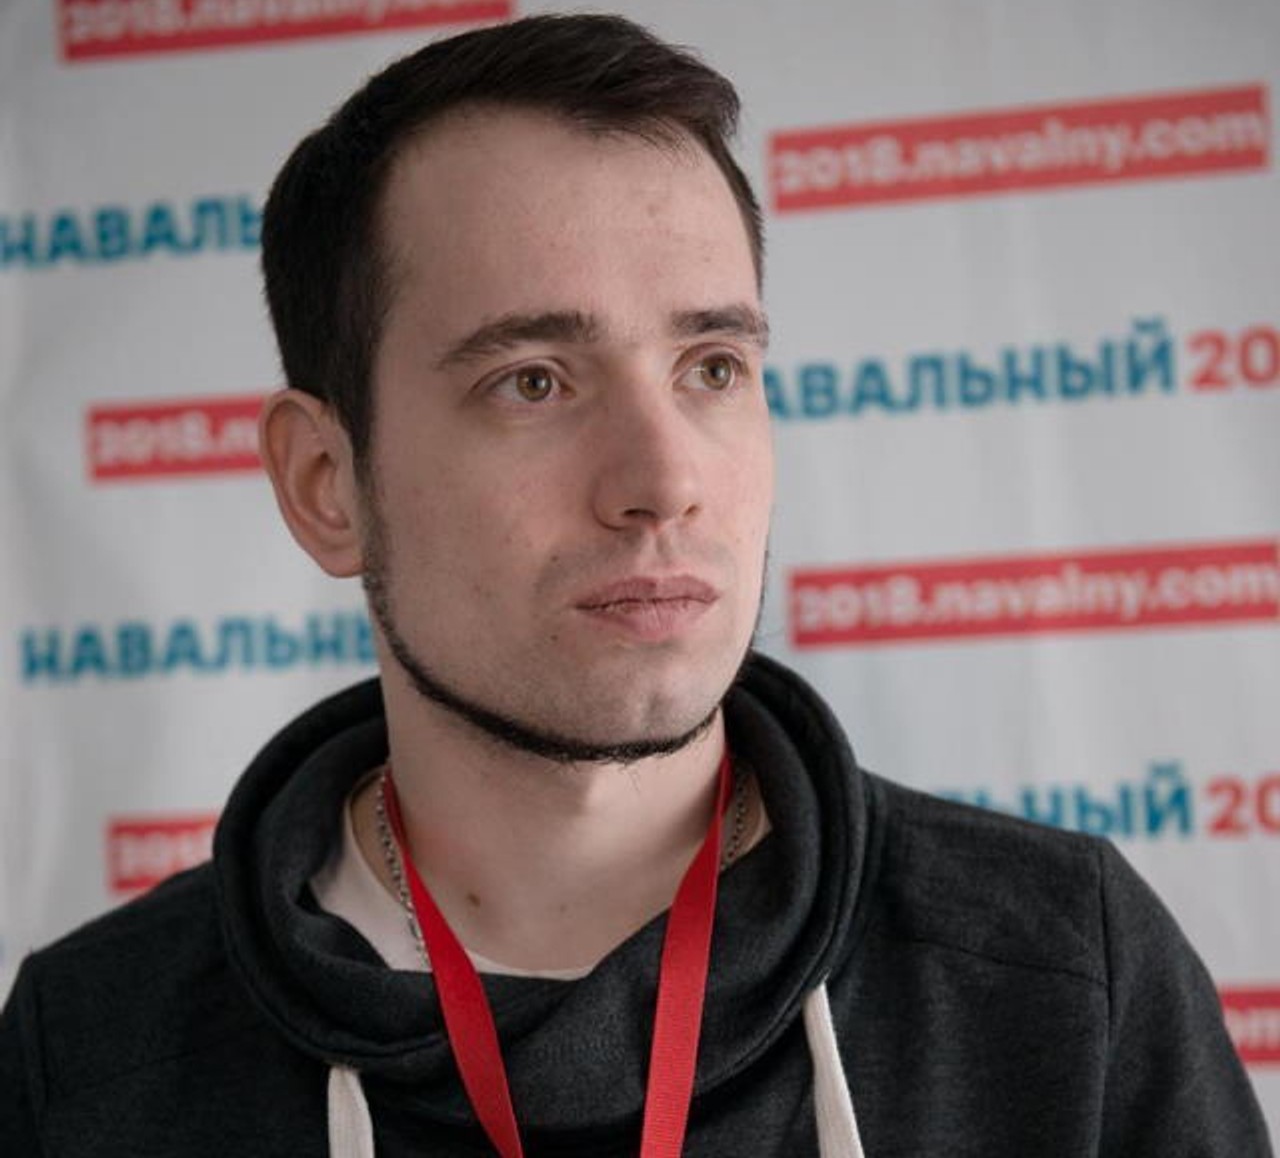 Координатора хабаровського штабу Навального відправили під домашній арешт за статтею 212.1 КК РФ, відомої як «дадінская»